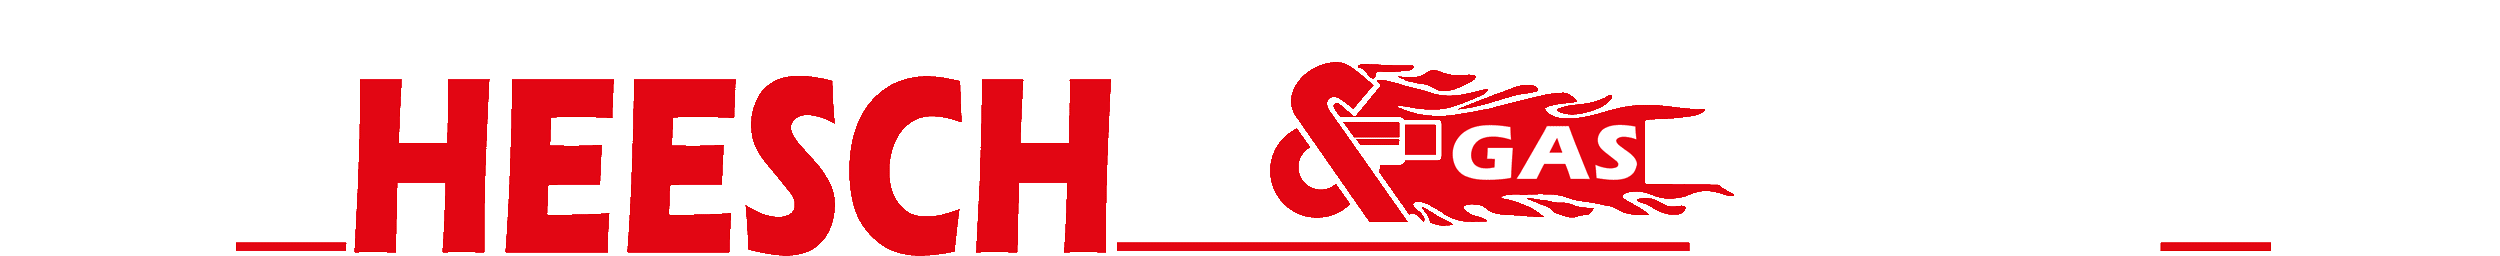 Henning Heesch Öl & Gas Feuerung Heizung u. Sanitär Logo